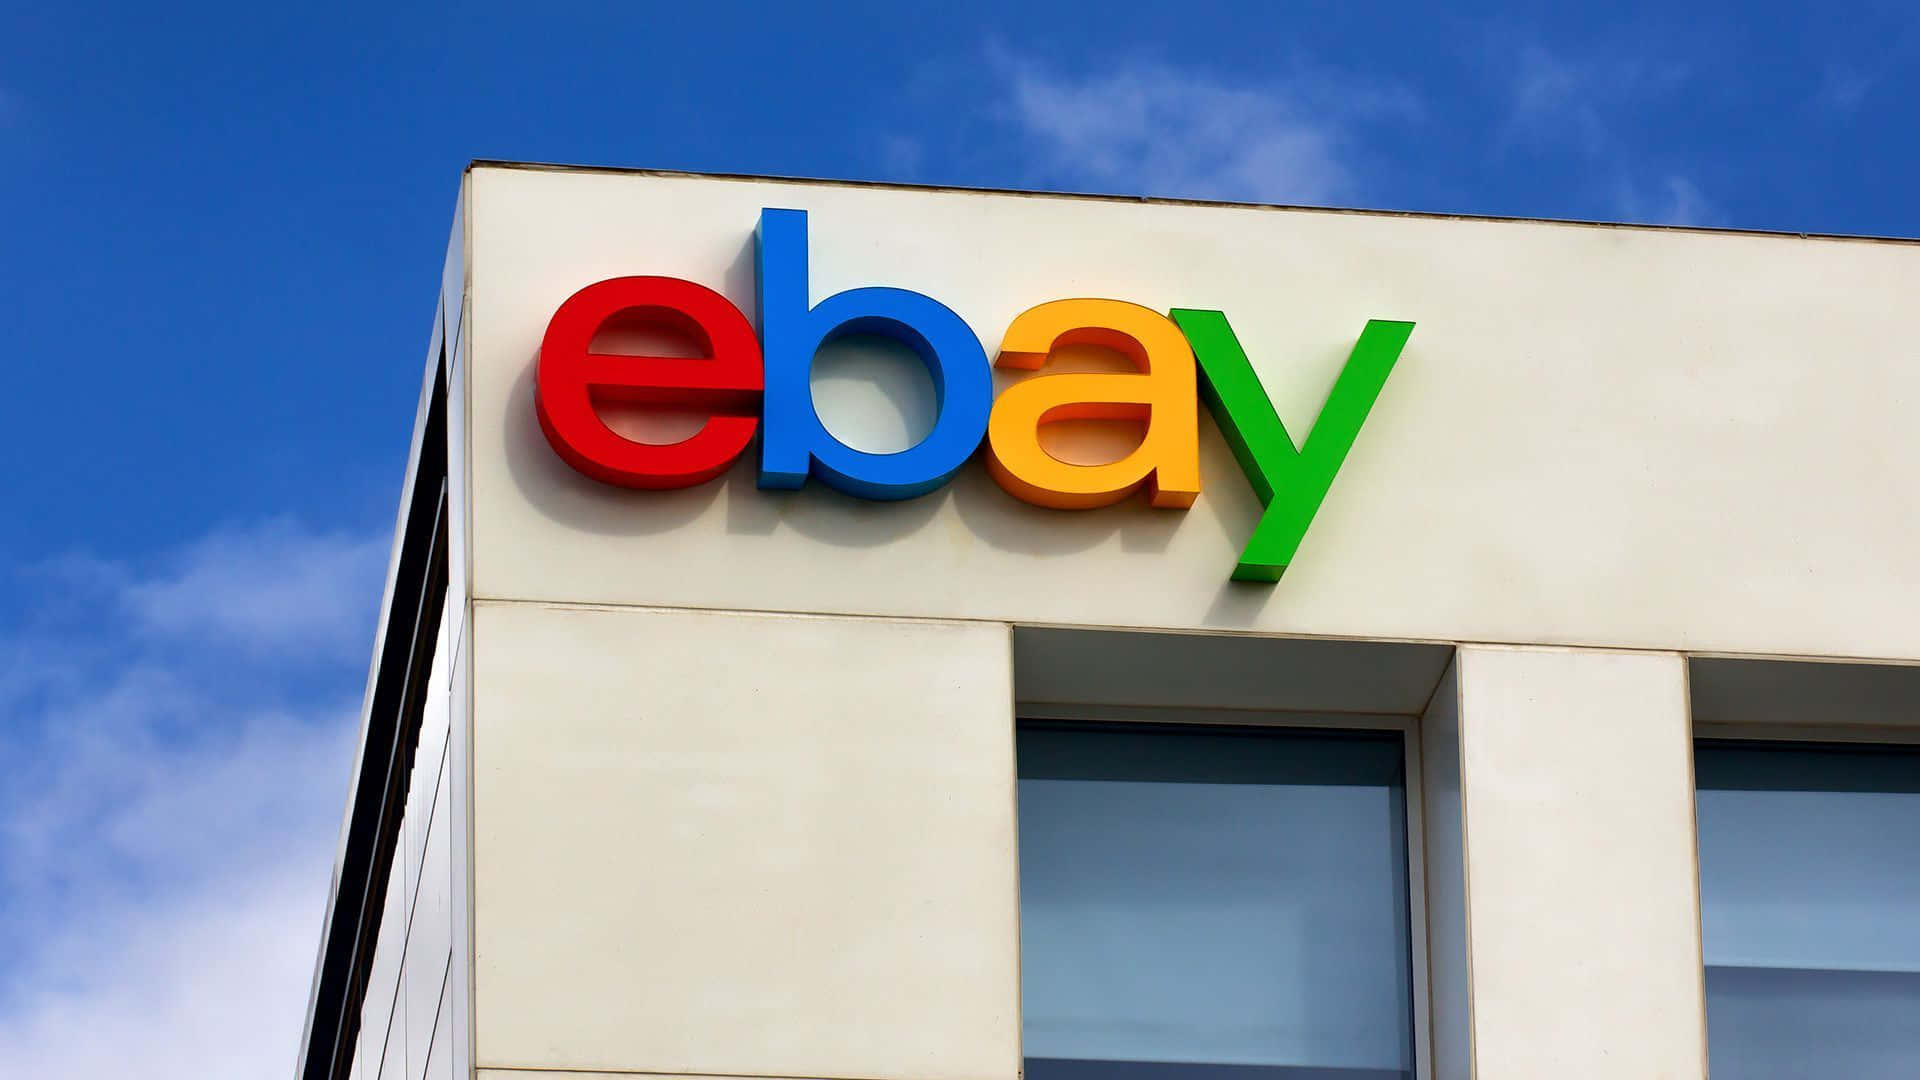 Logotipode Ebay Uk En Un Edificio Blanco. Fondo de pantalla